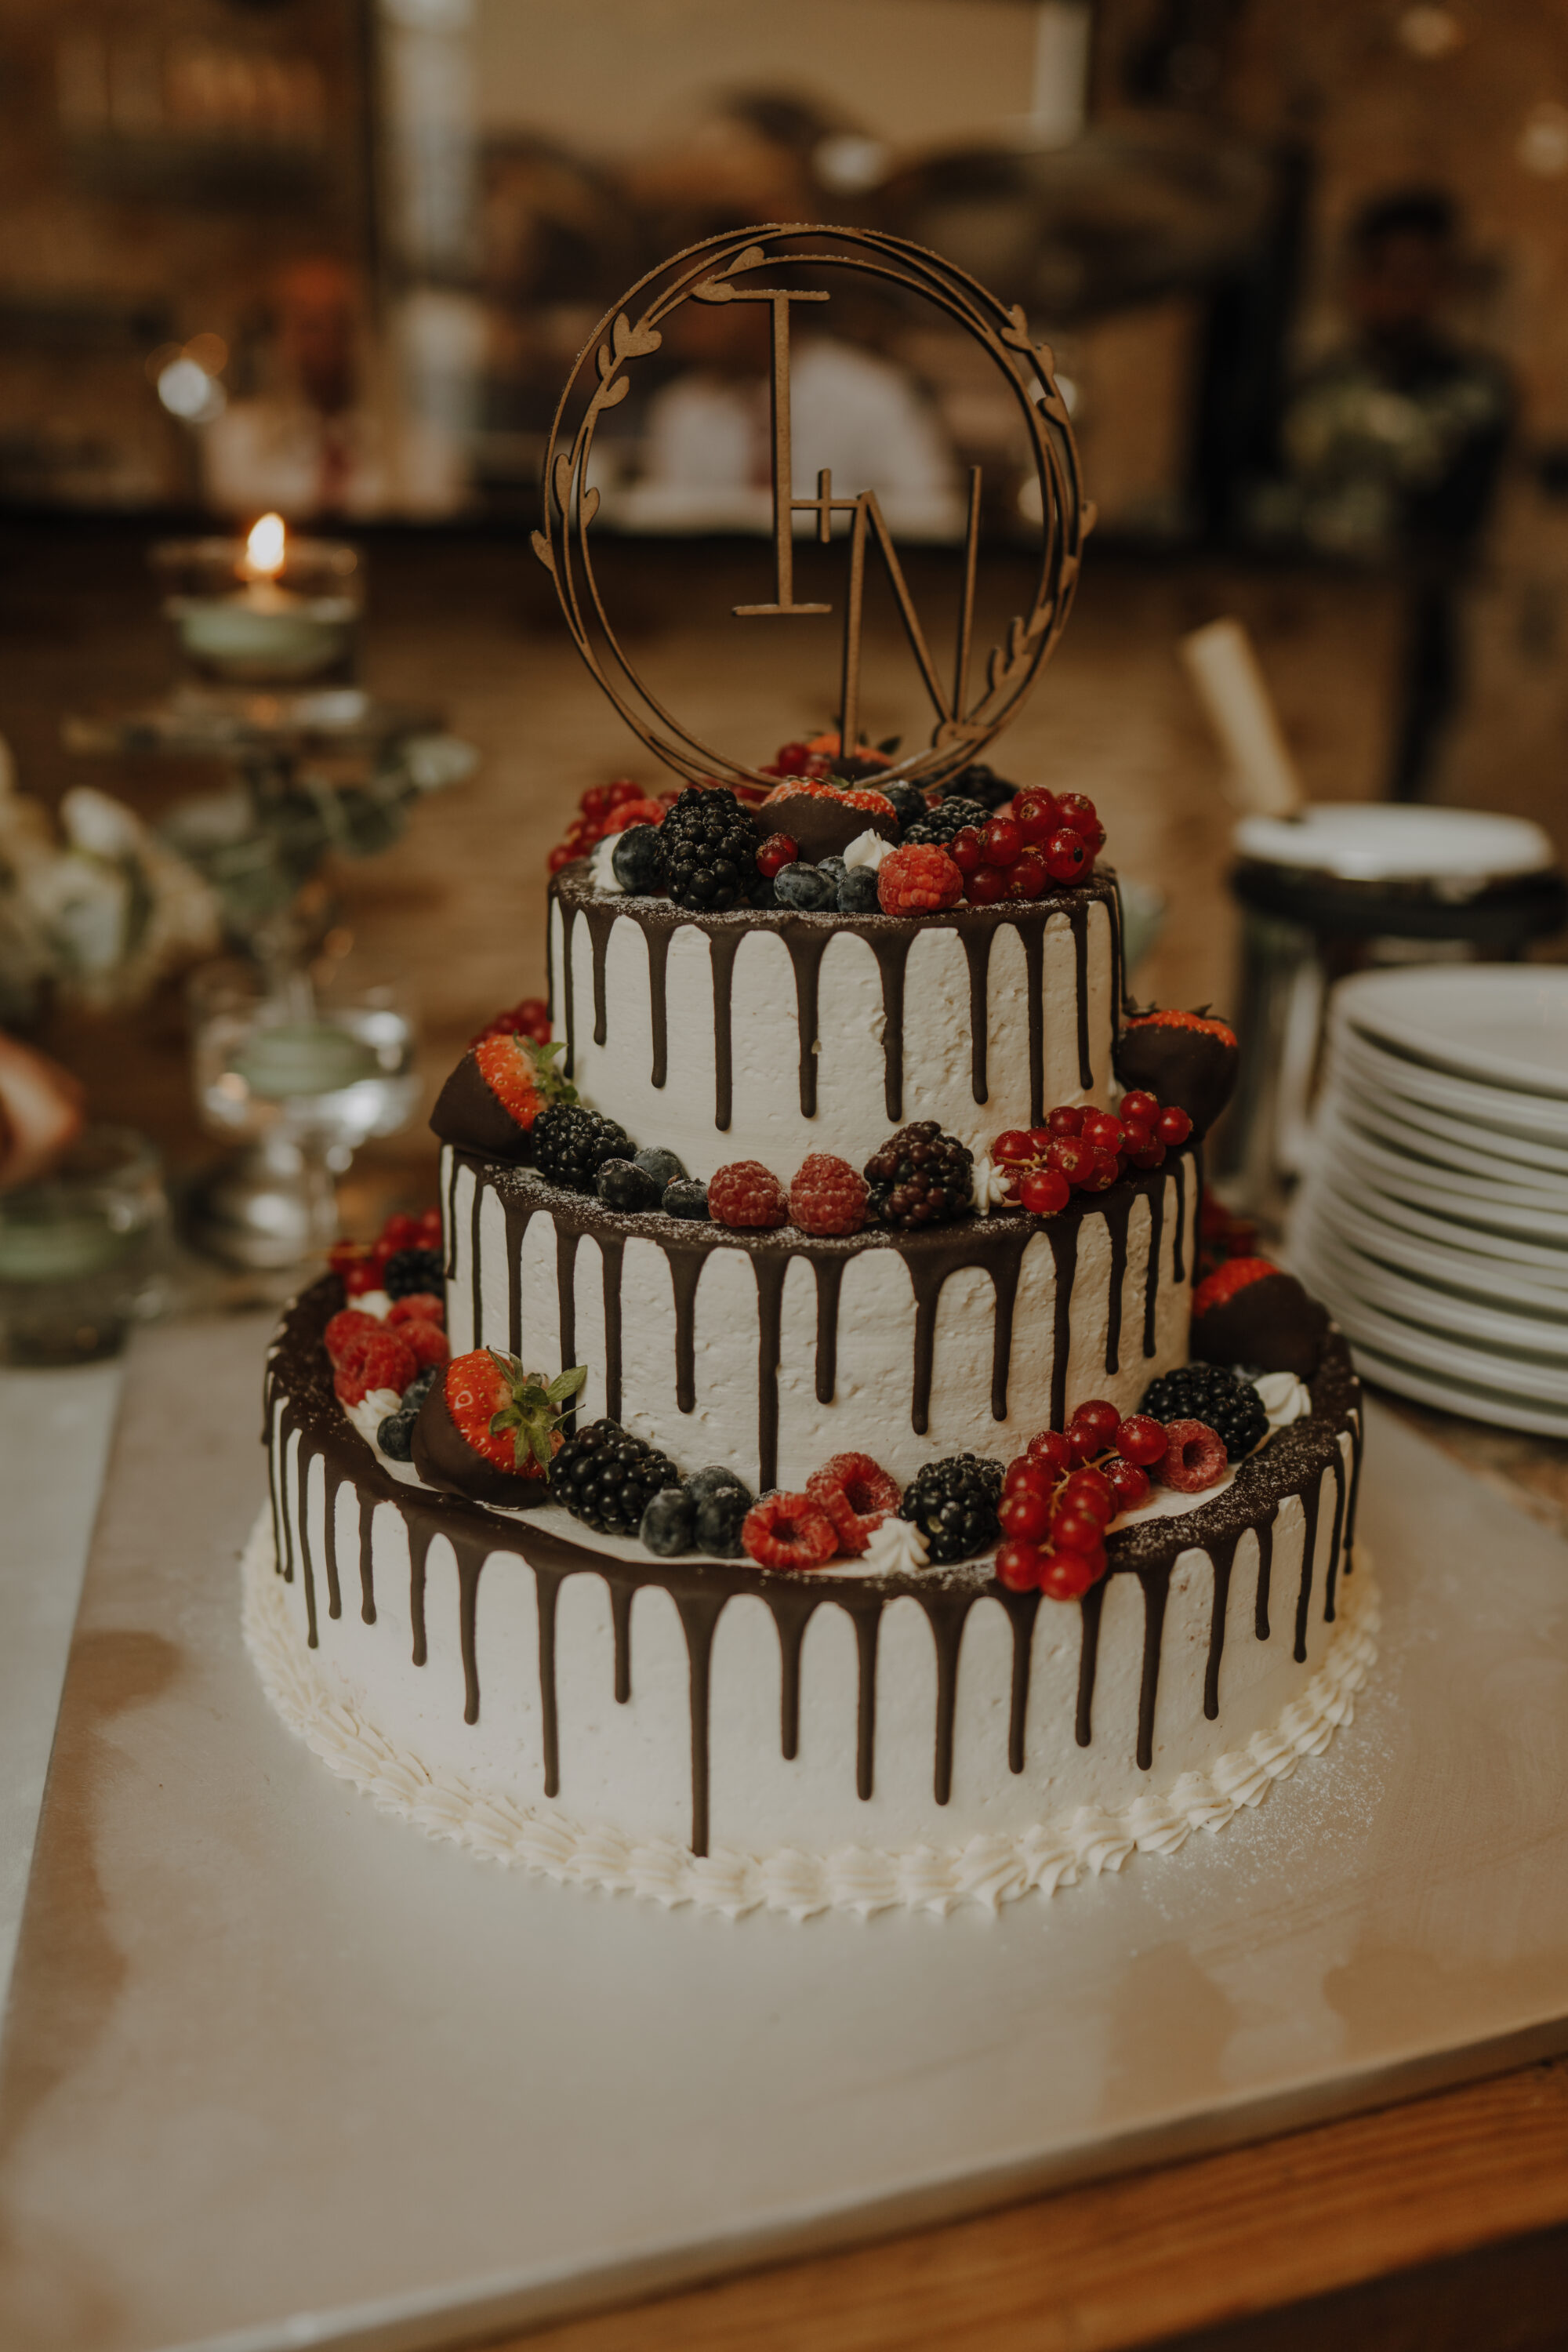 Die mit Schokolade und Früchten verzierte Hochzeitstorte